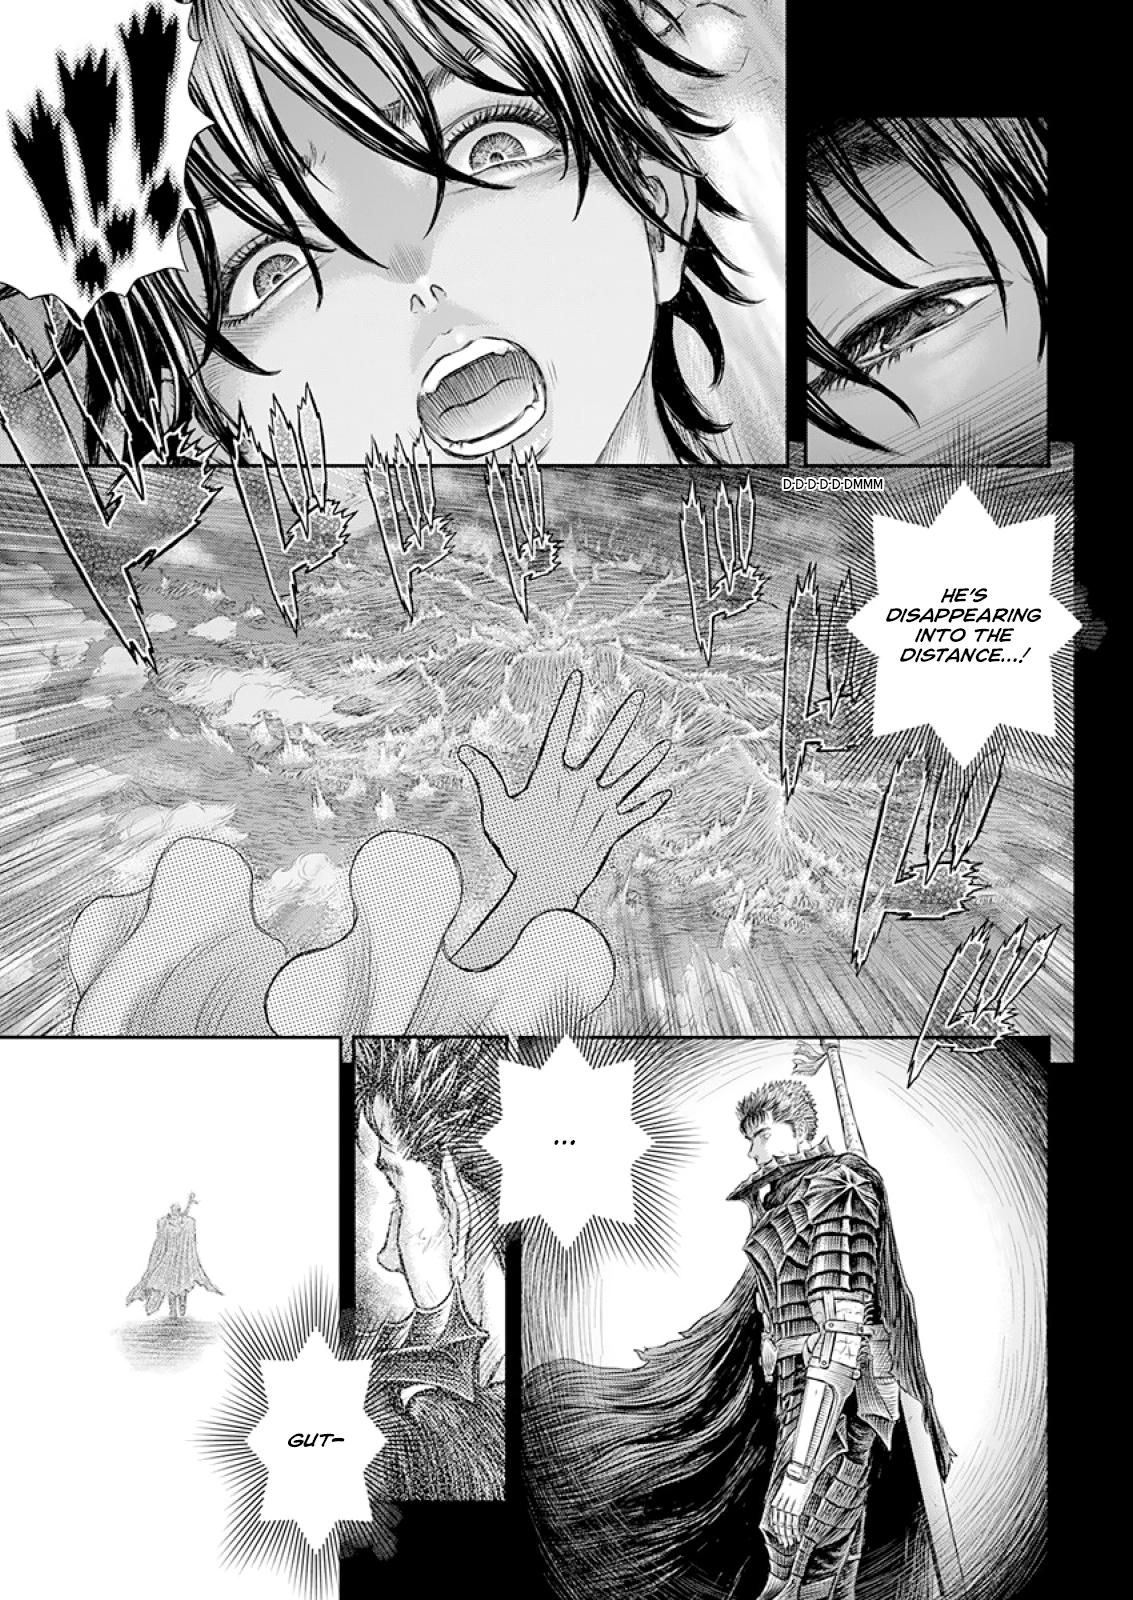 Berserk Manga Chapter 372 image 02